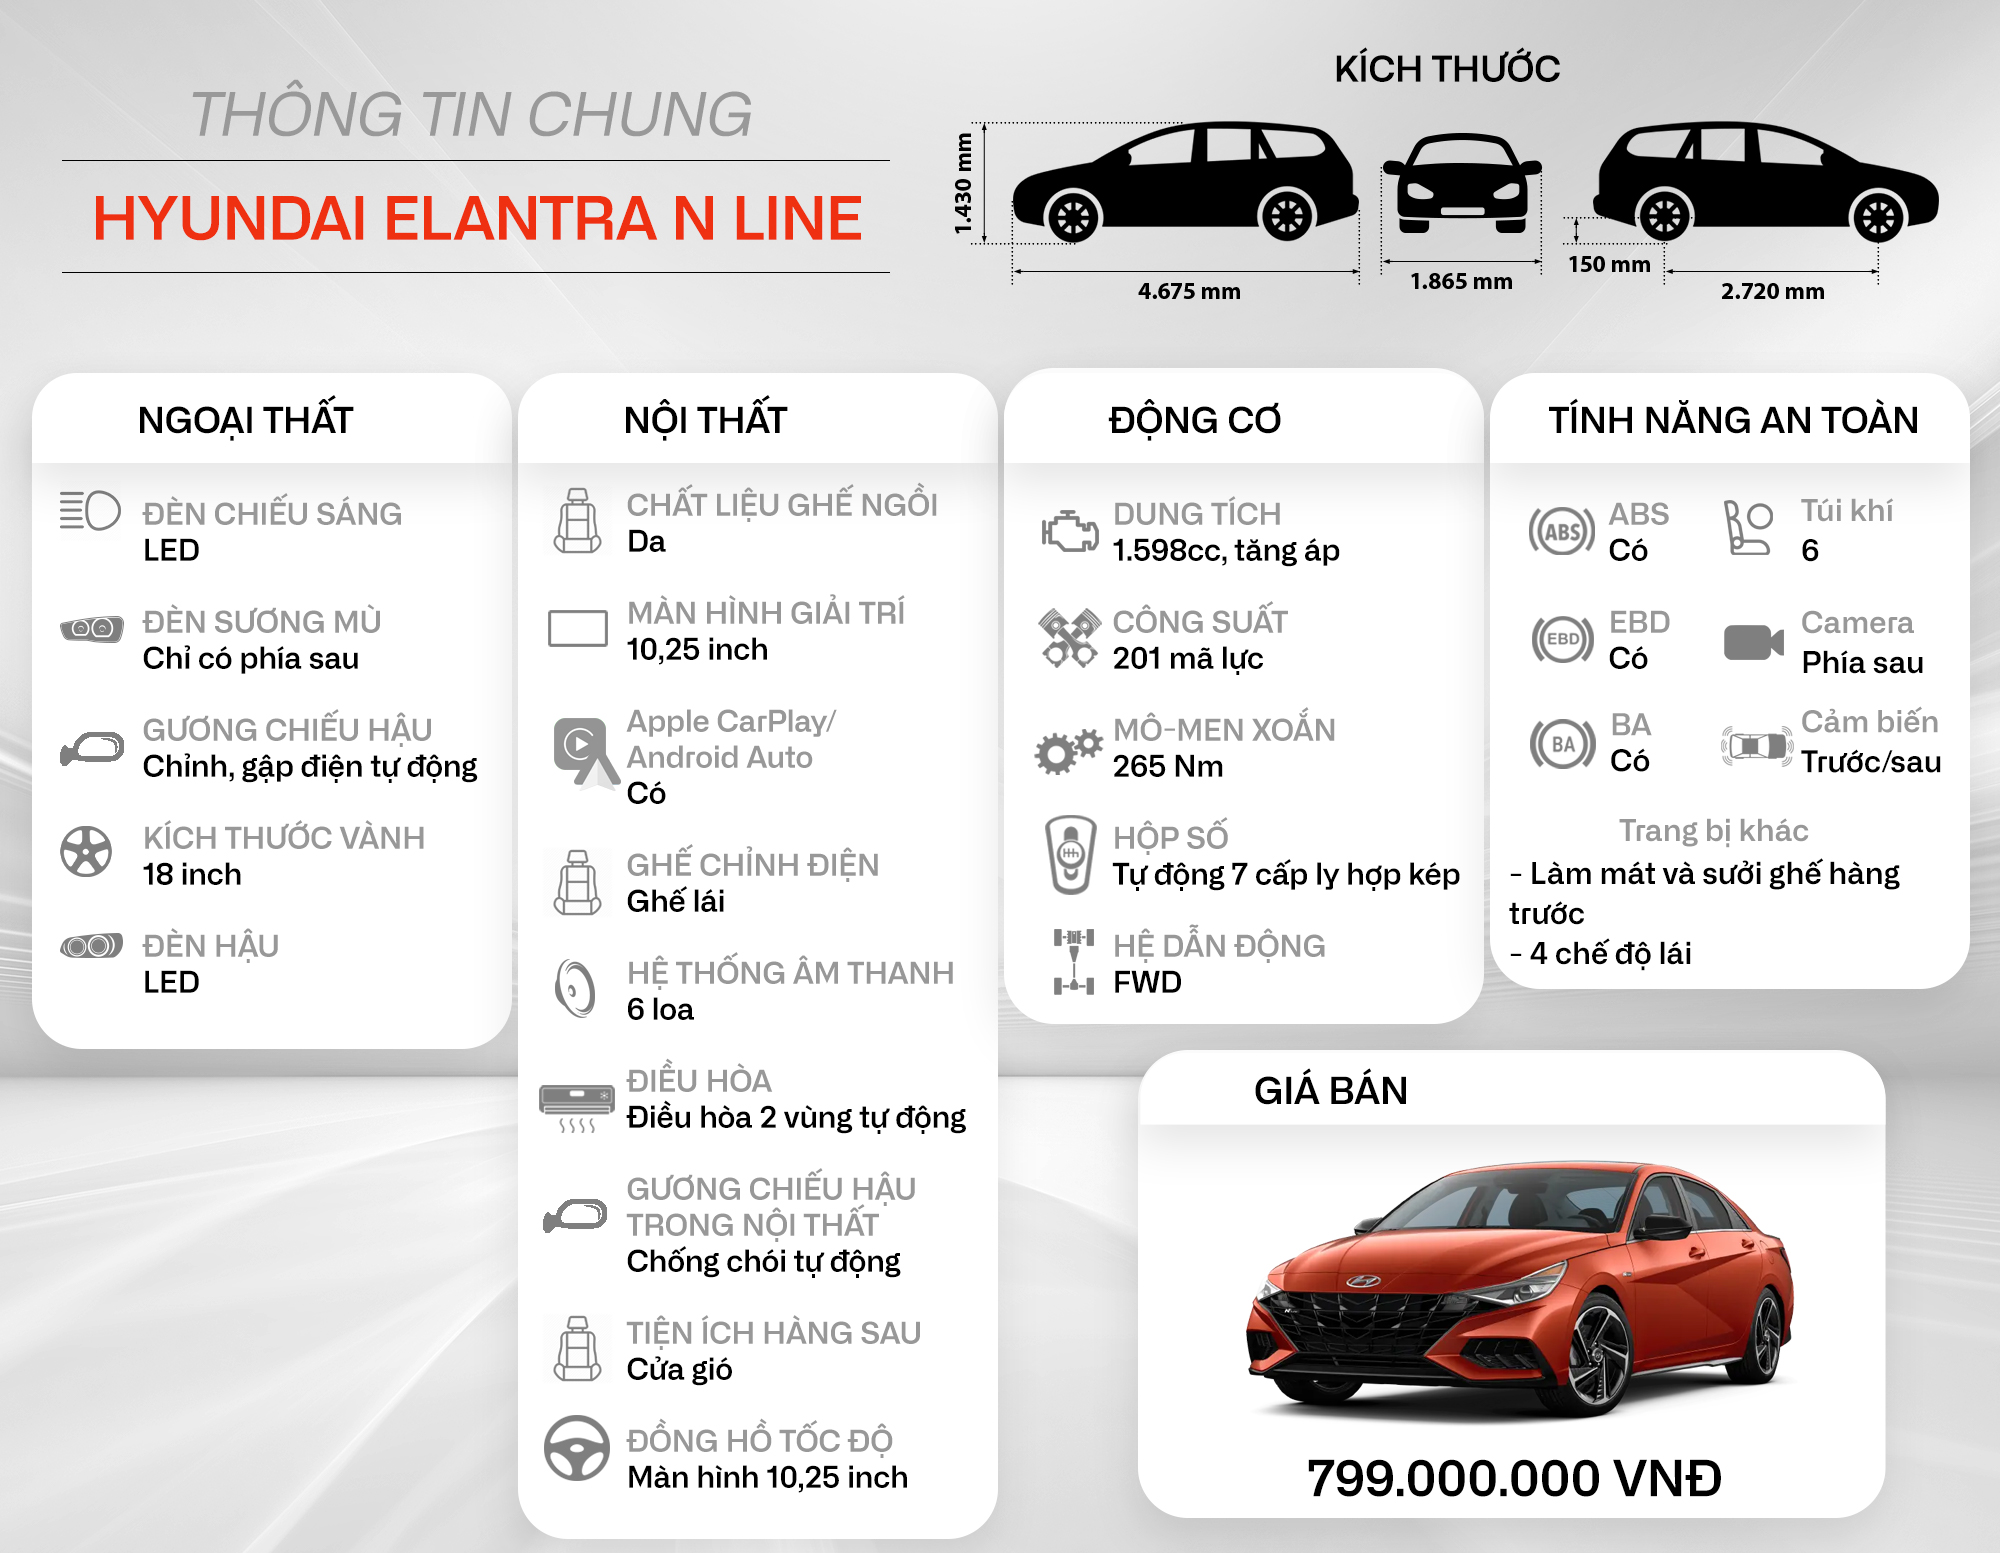 Đánh giá Hyundai Elantra N Line: Xe thể thao giá 799 triệu, mạnh và cảm xúc hơn Civic RS, còn điểm yếu công nghệ - Ảnh 2.